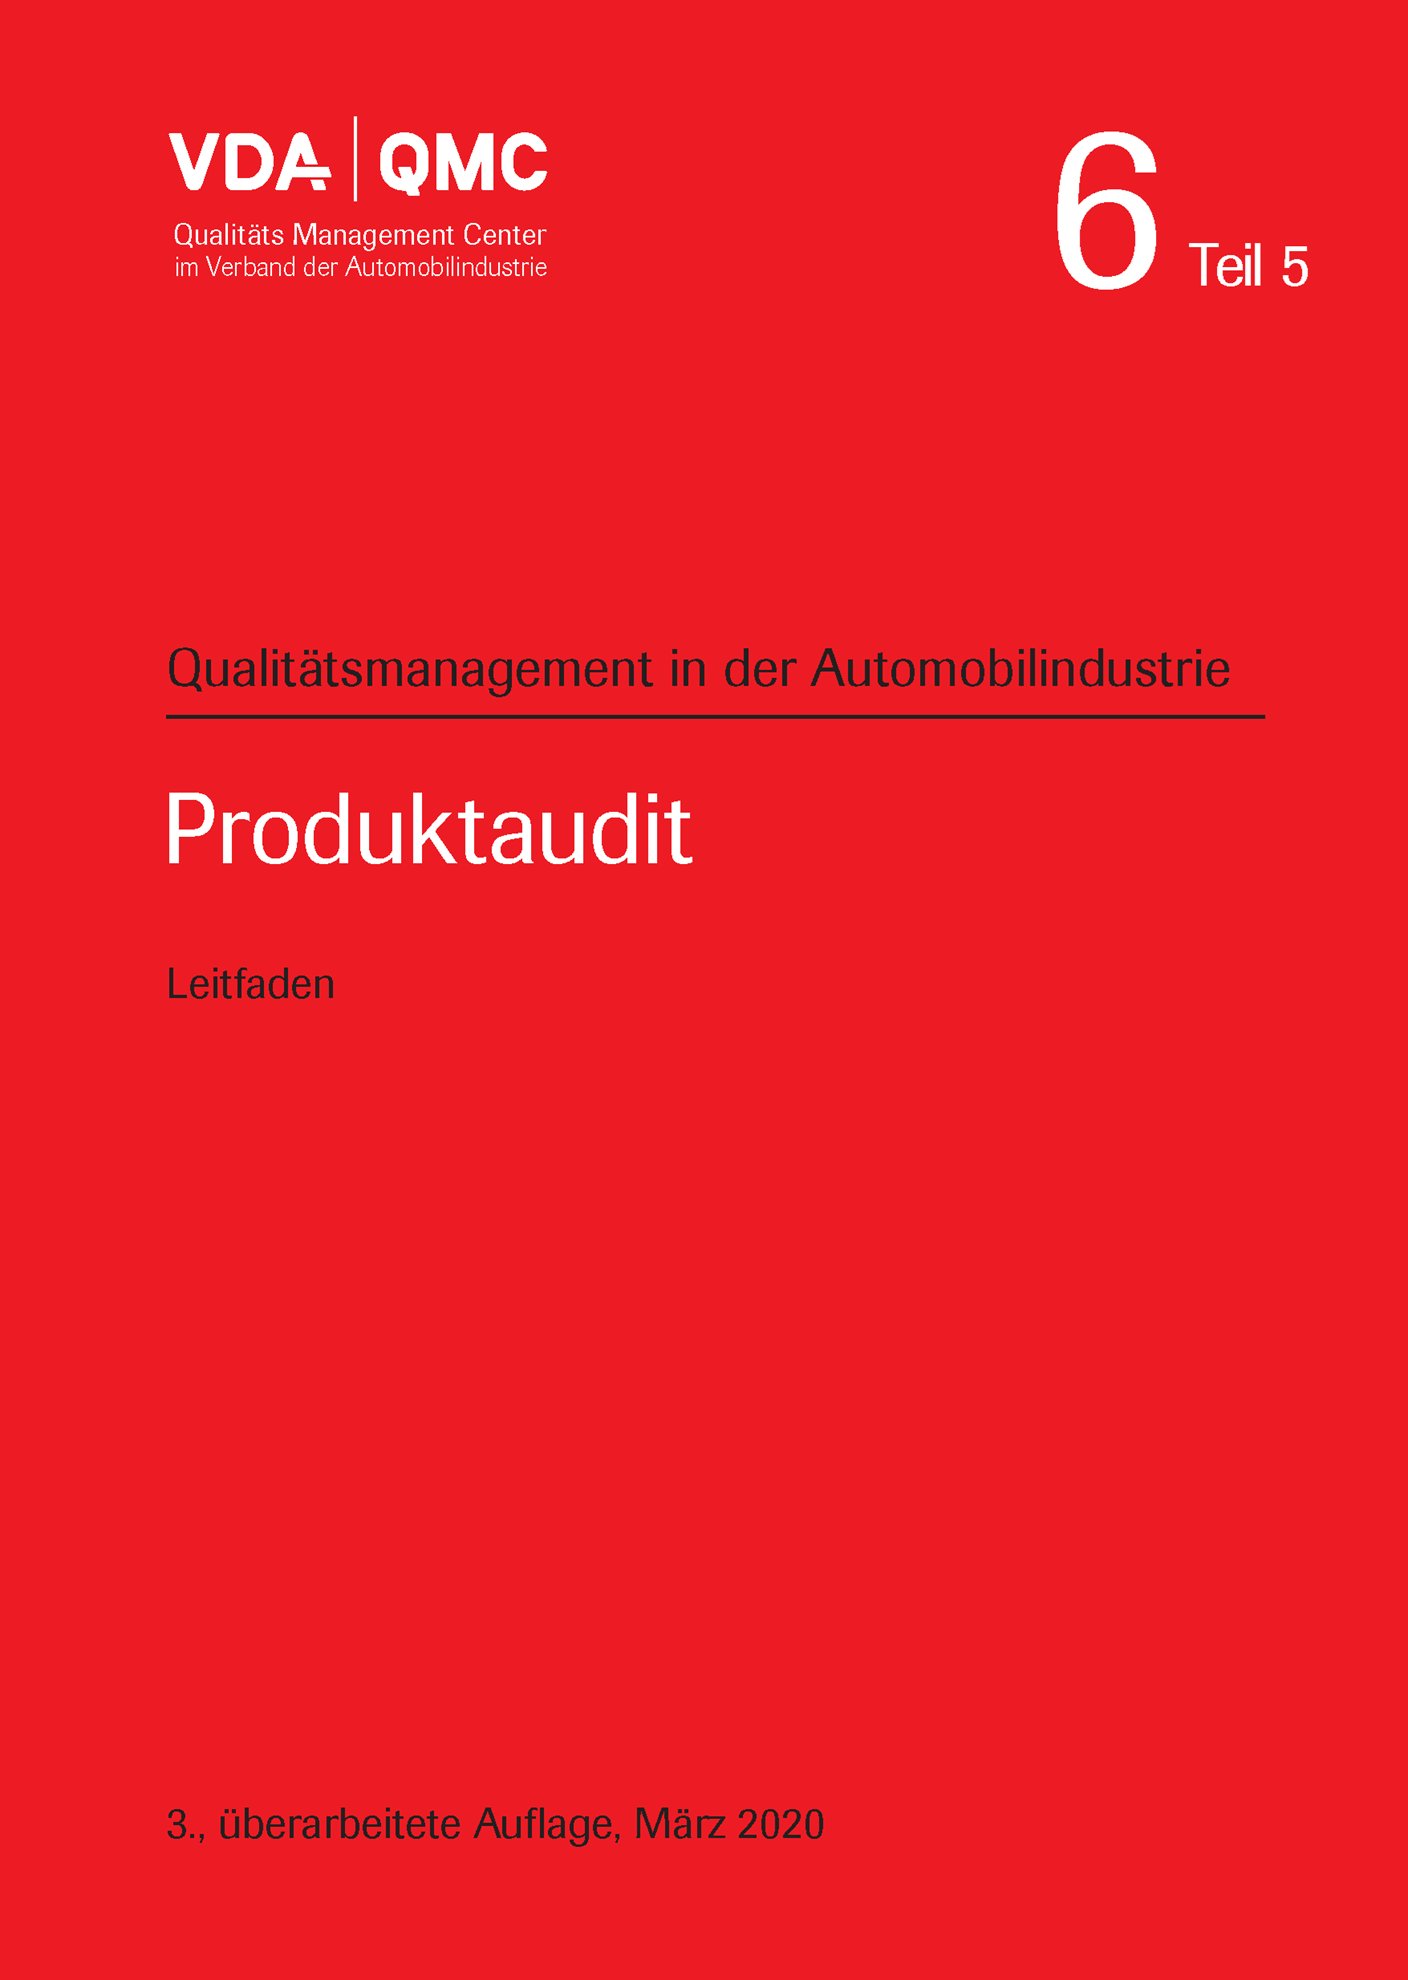 Náhľad  VDA Band 6 Teil 5 - Produktaudit, 3. überarbeitete Auflage, März 2020 1.3.2020